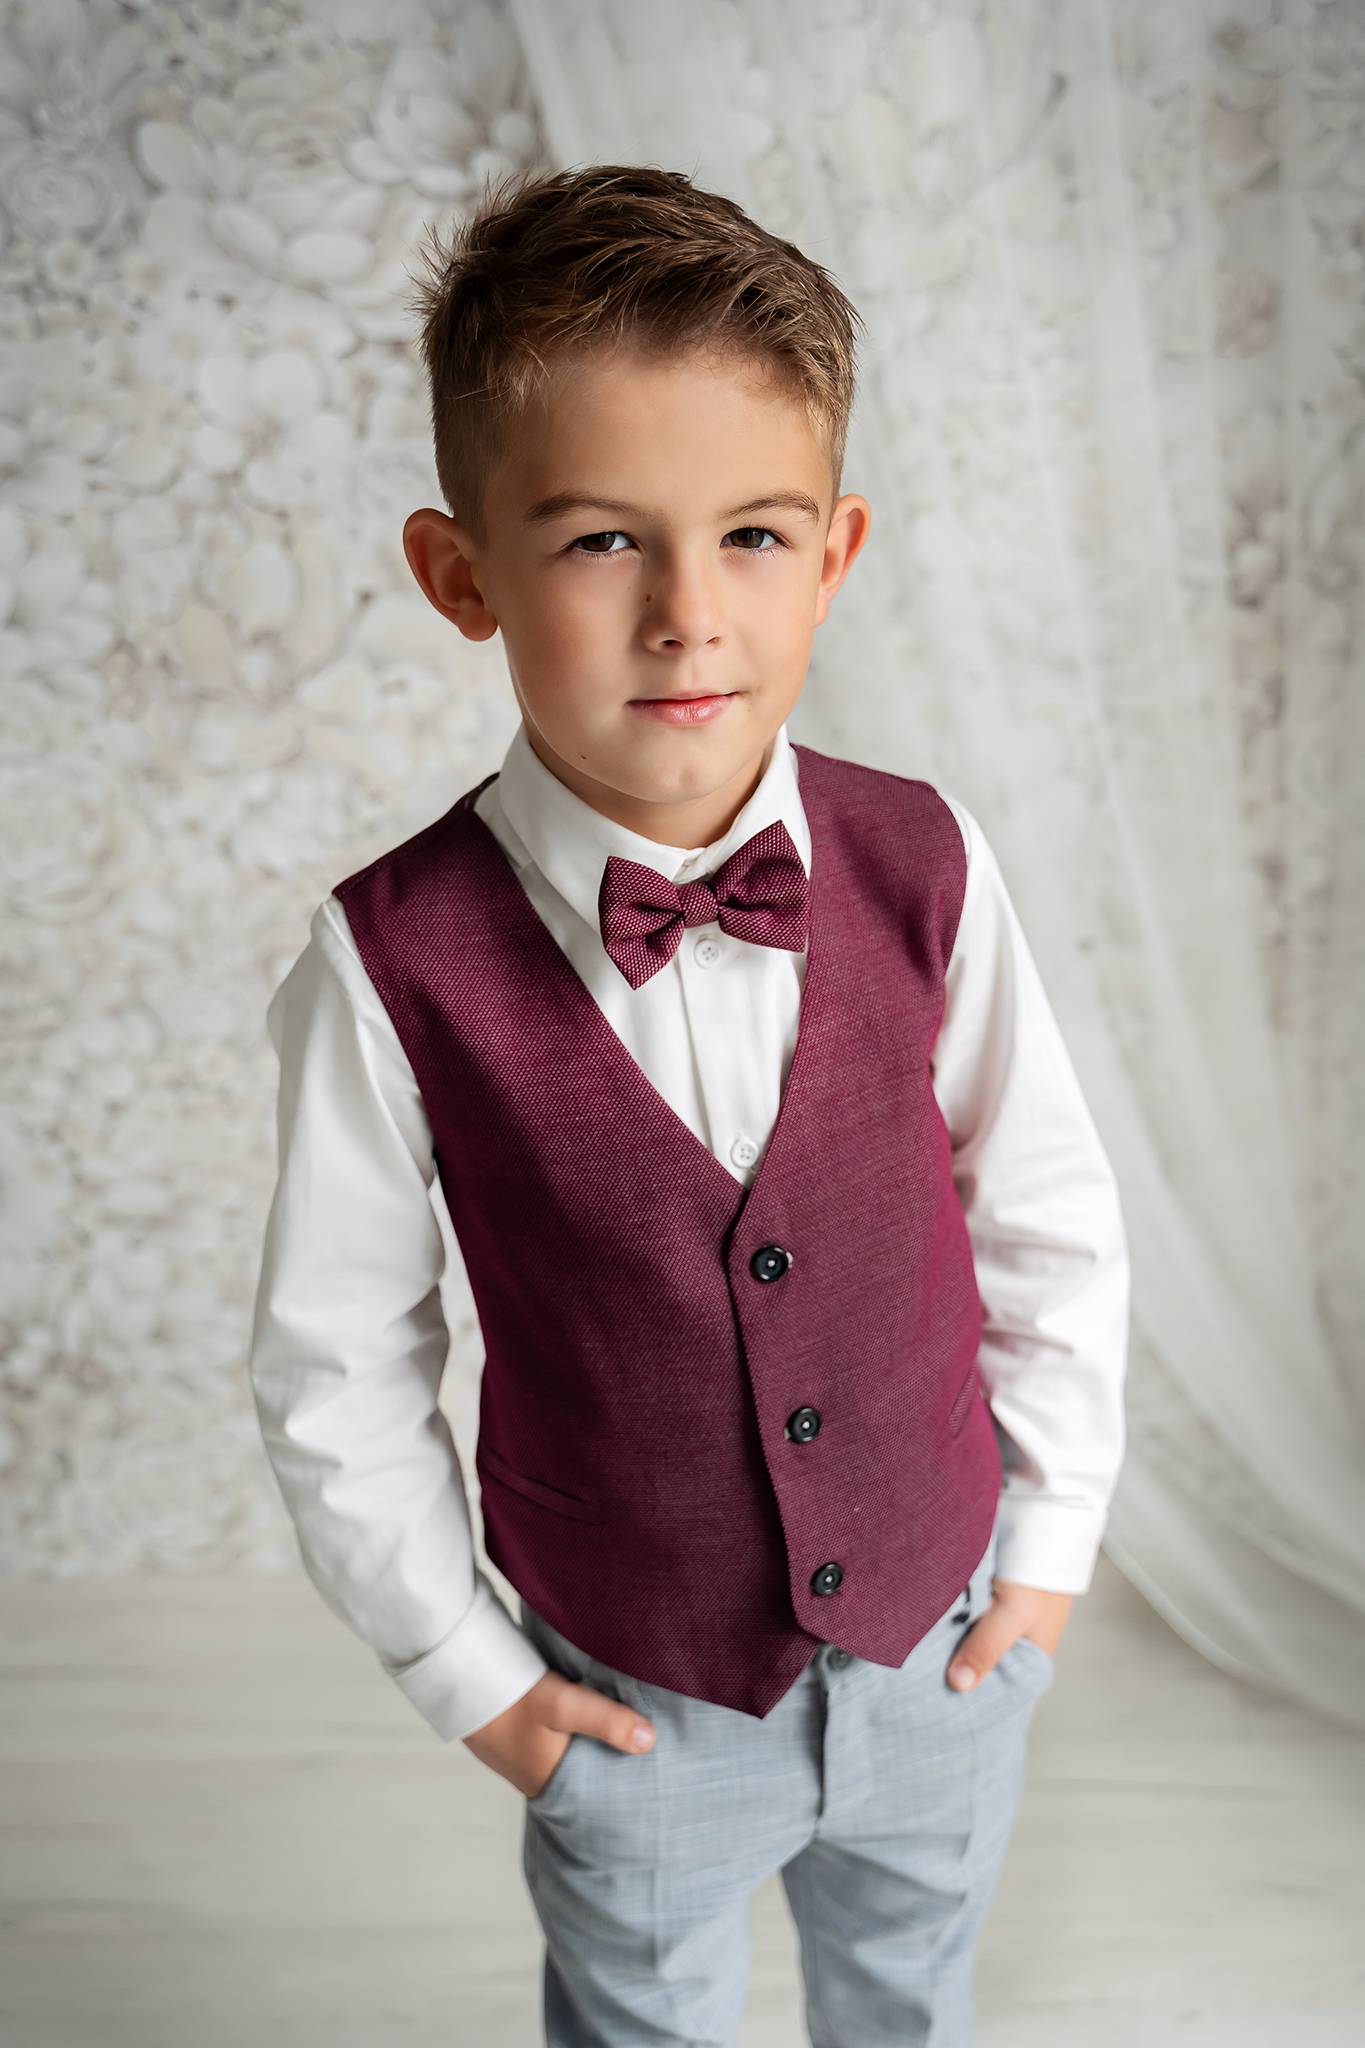 Bordová obleková vesta pre chlapca + motýlik 110